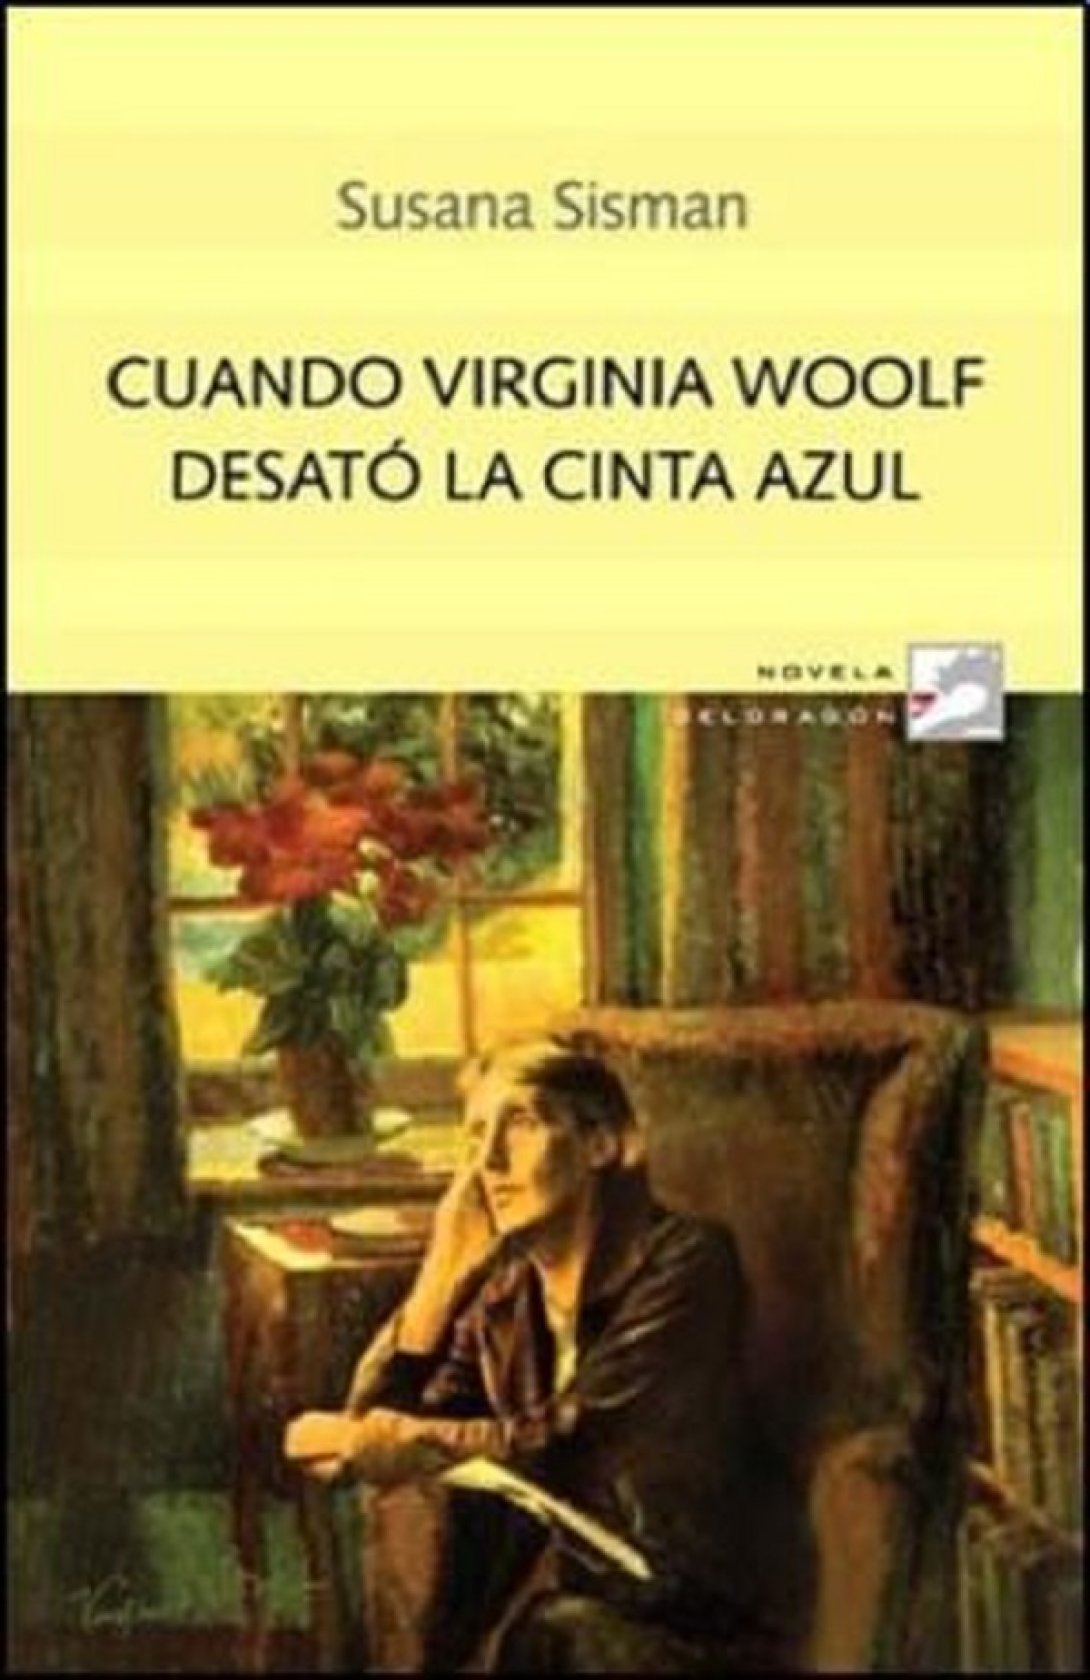 Cuando Virginia Woolf desató su cinta azul